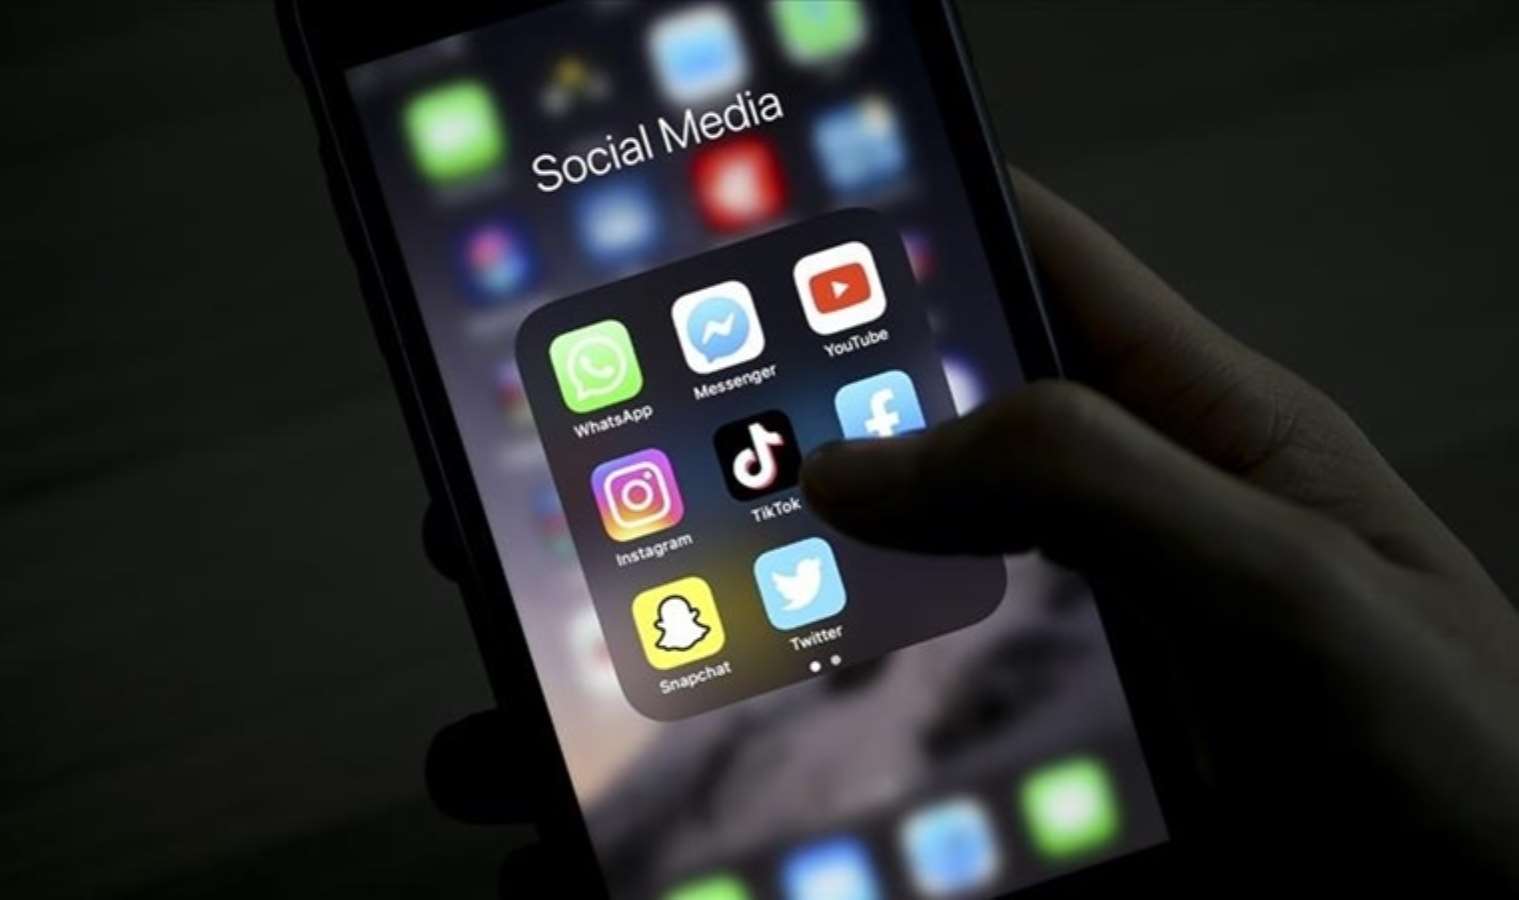 Florida'da 16 yaşından küçüklerin sosyal medyaya erişimi yasaklandı